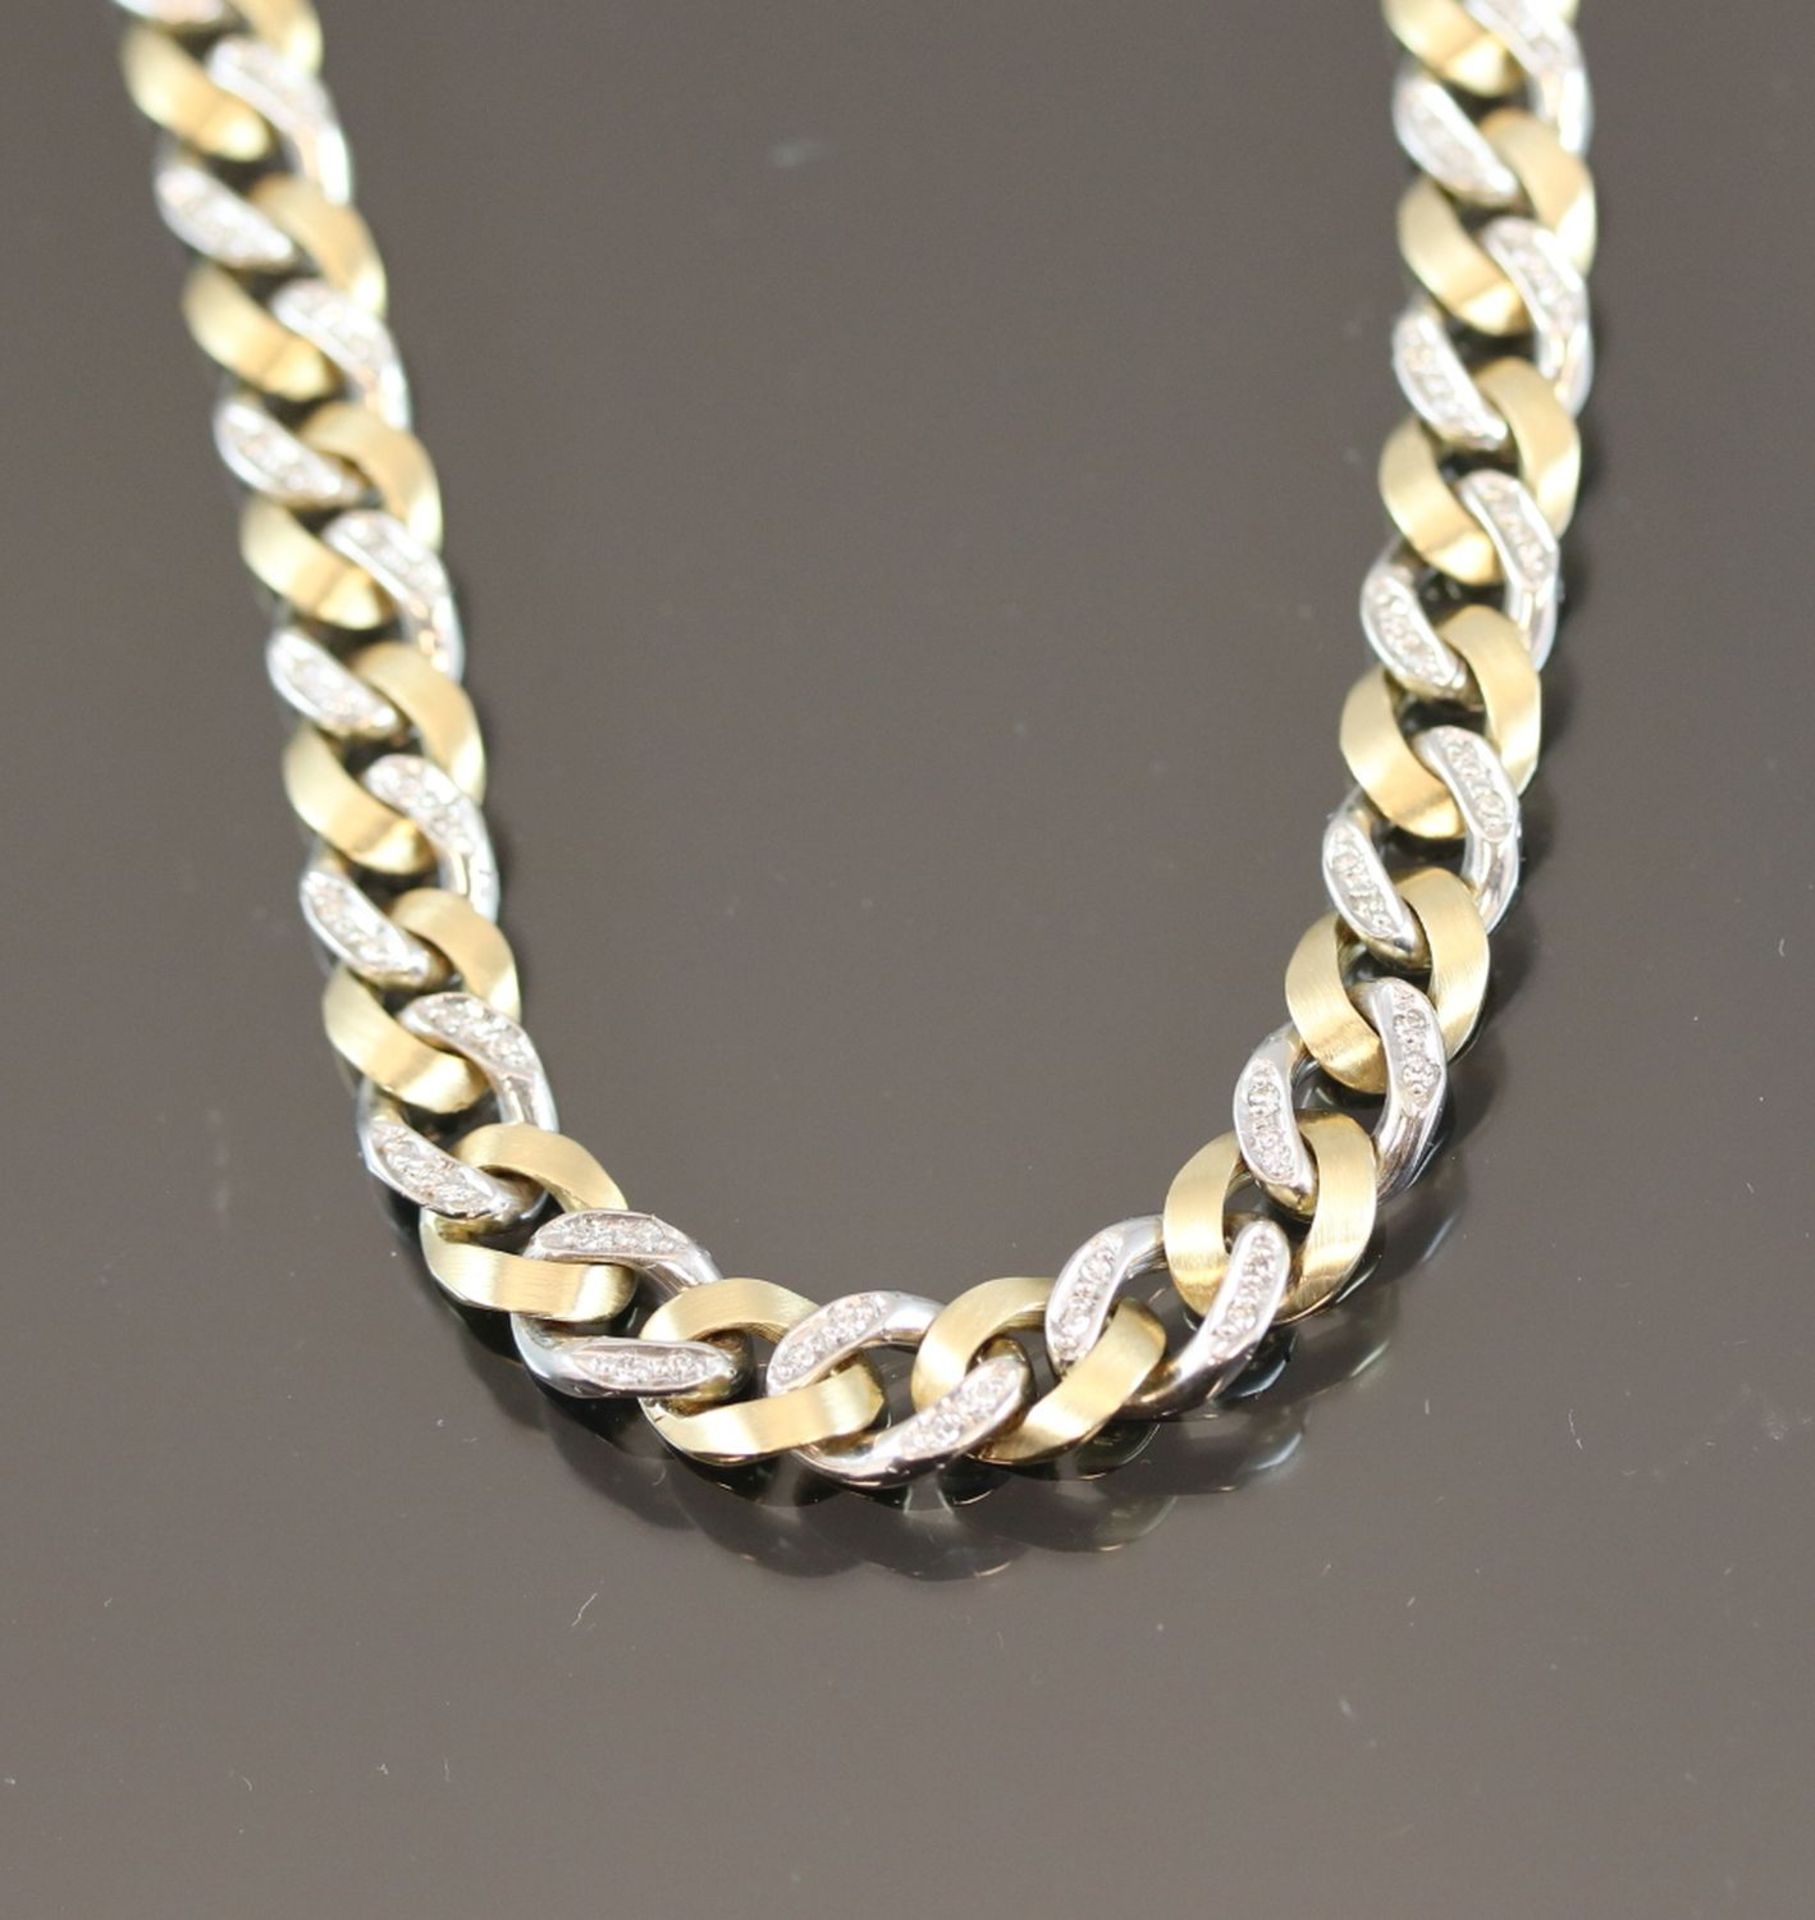 Diamant-Halskette, 585 Gold47,7 Gramm 72 Diamanten, 0,35 ct., w/si. Länge: 42 cm Schätzpreis: 4000,-